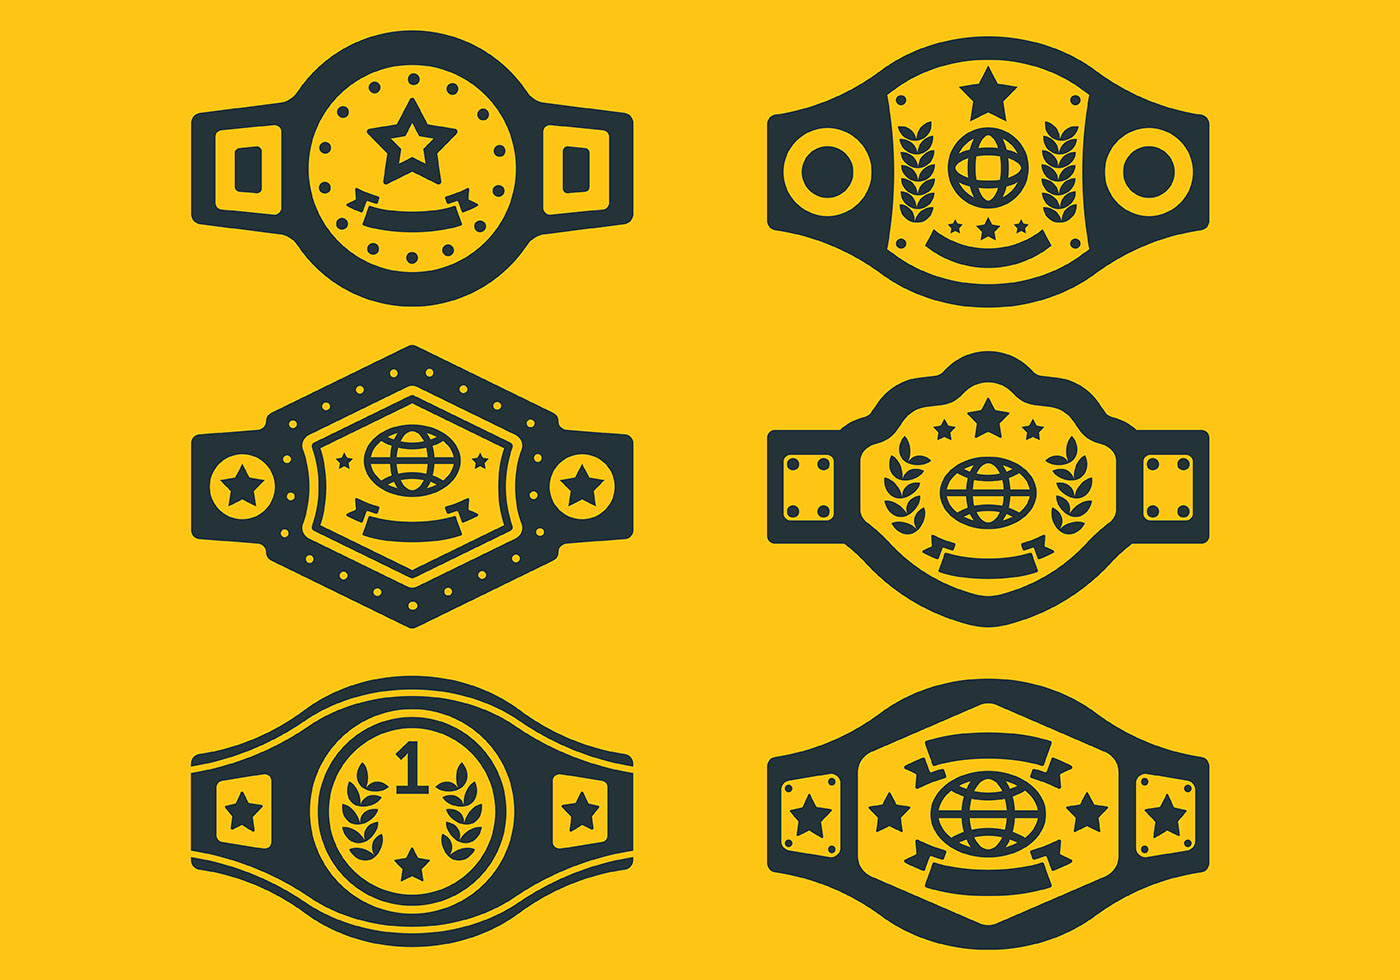 Wrestling championship belt template